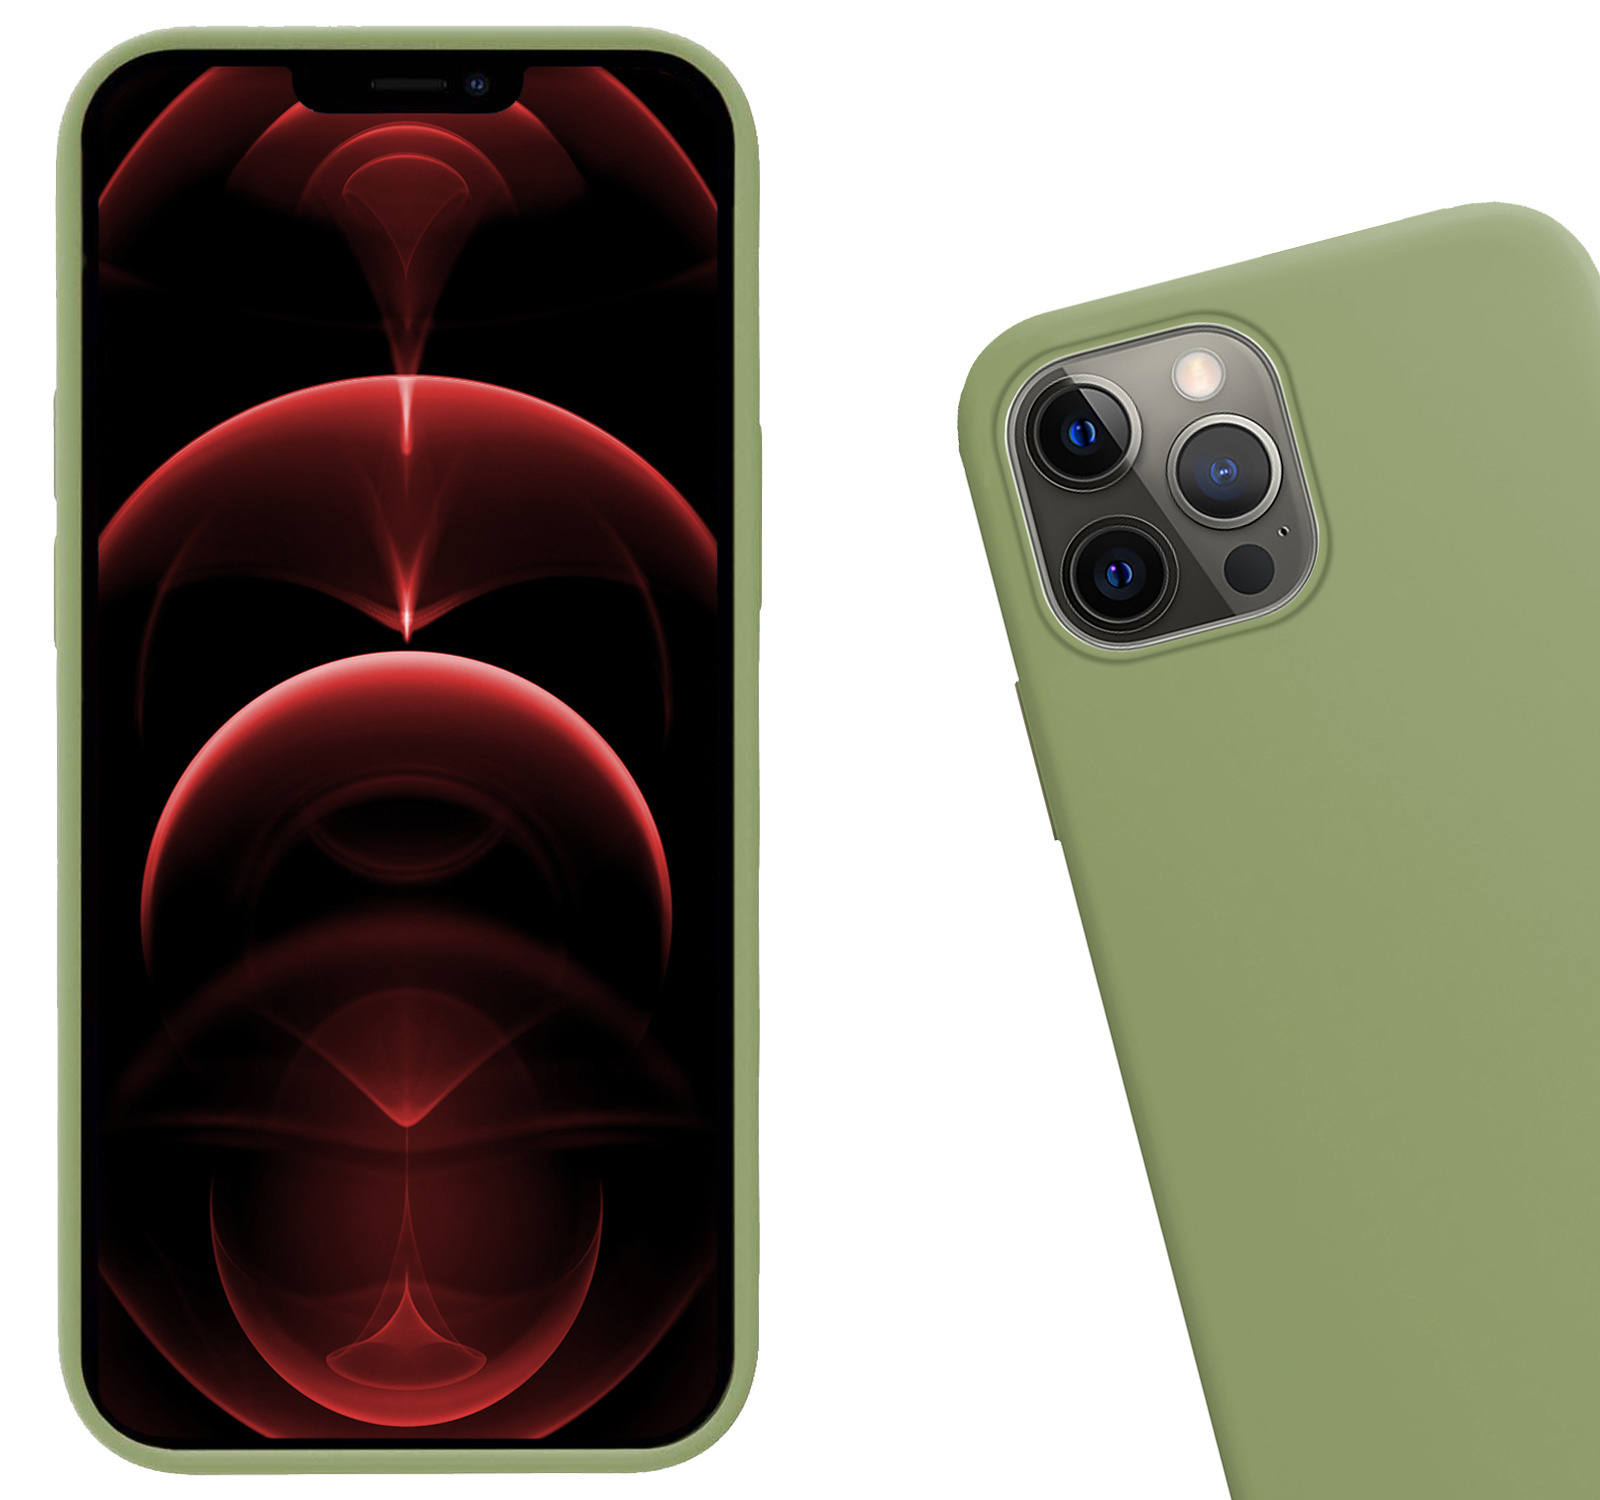 Hoes voor iPhone 14 Pro Max Hoesje Siliconen Case Back Cover - Hoes voor iPhone 14 Pro Max Hoes Cover Silicone - Groen - 2X